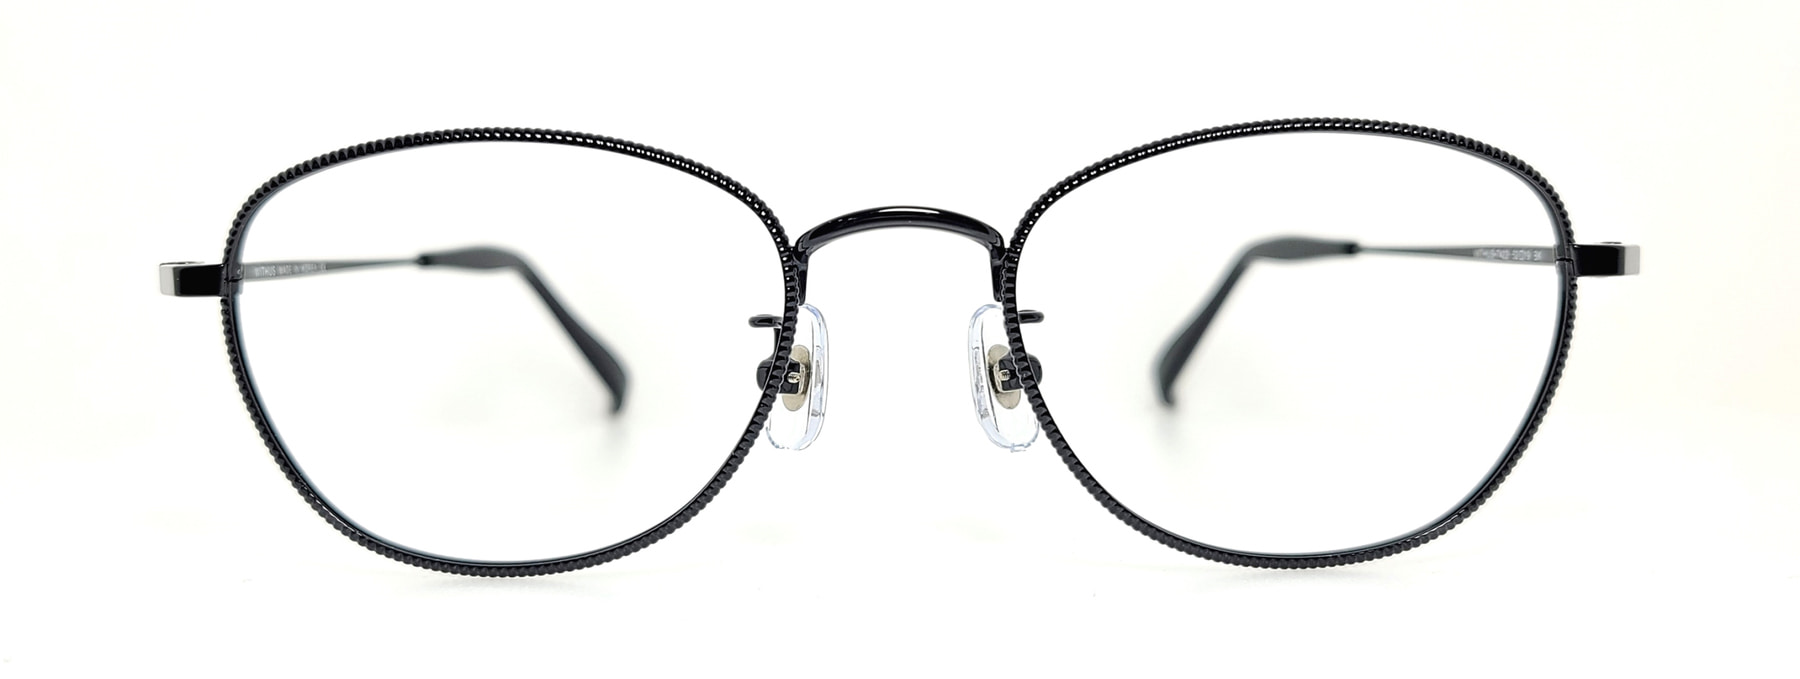 WITHUS-7422, Korean glasses, sunglasses, eyeglasses, glasses